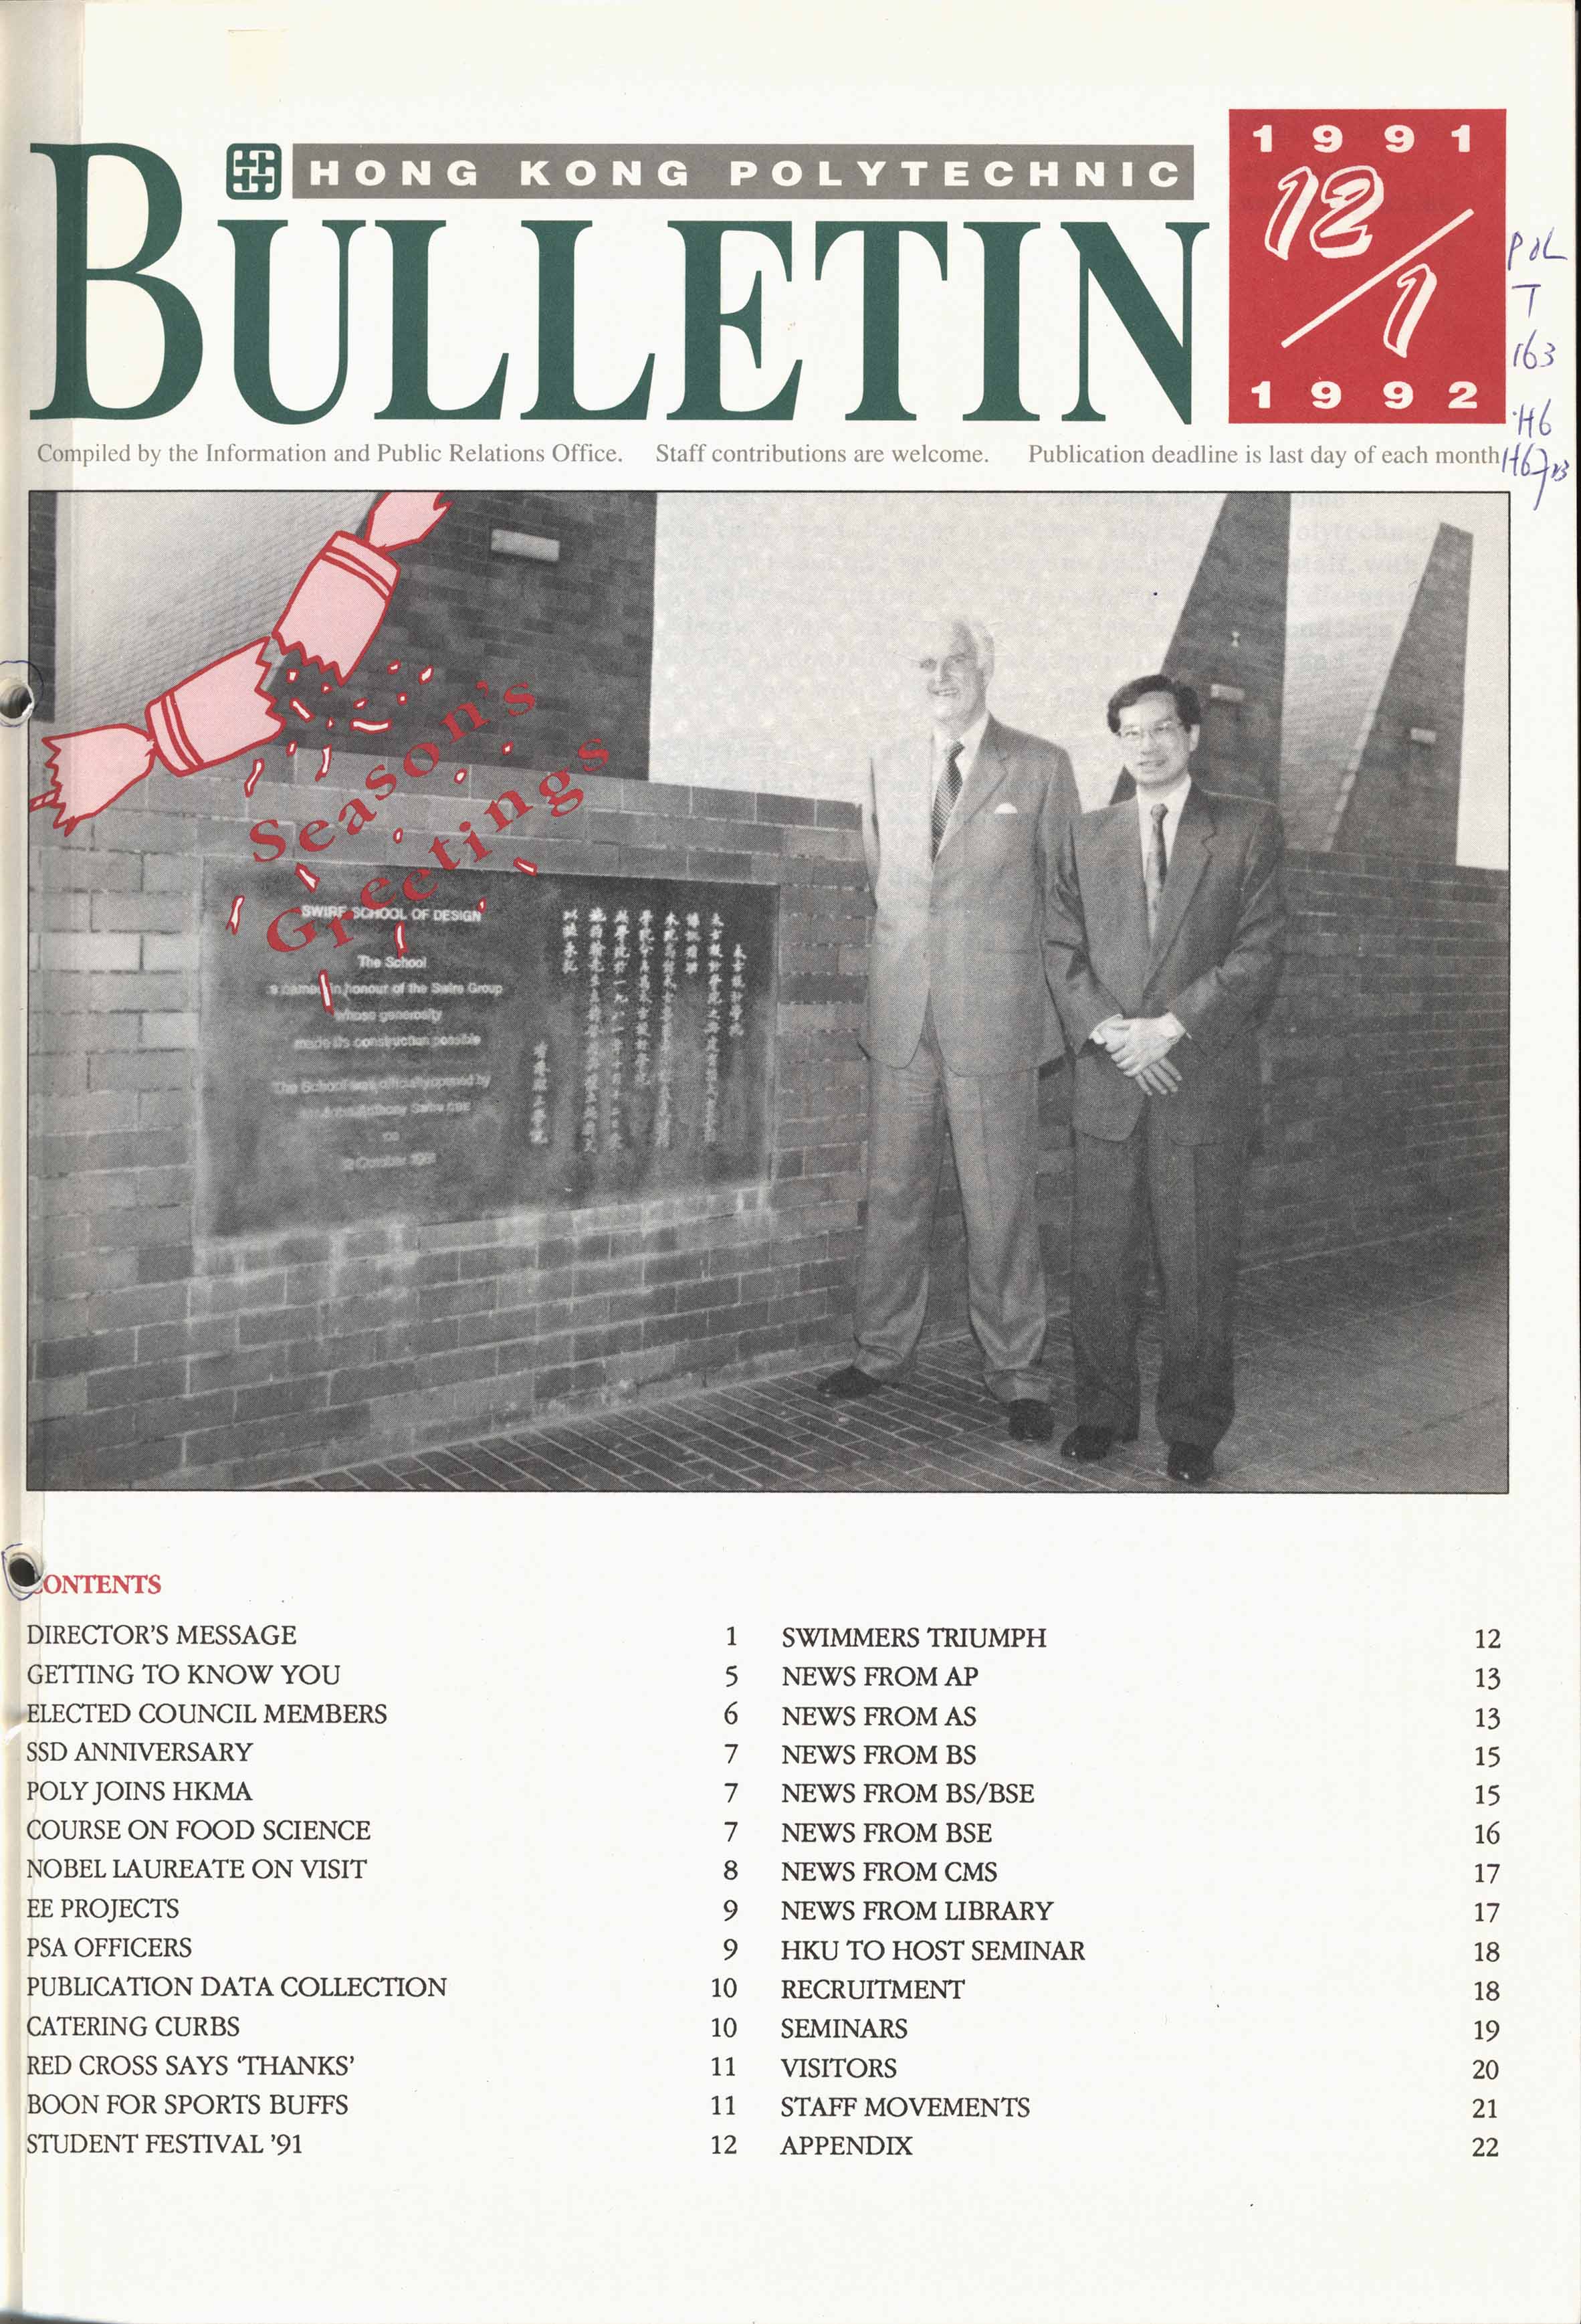 Bulletin [1992]